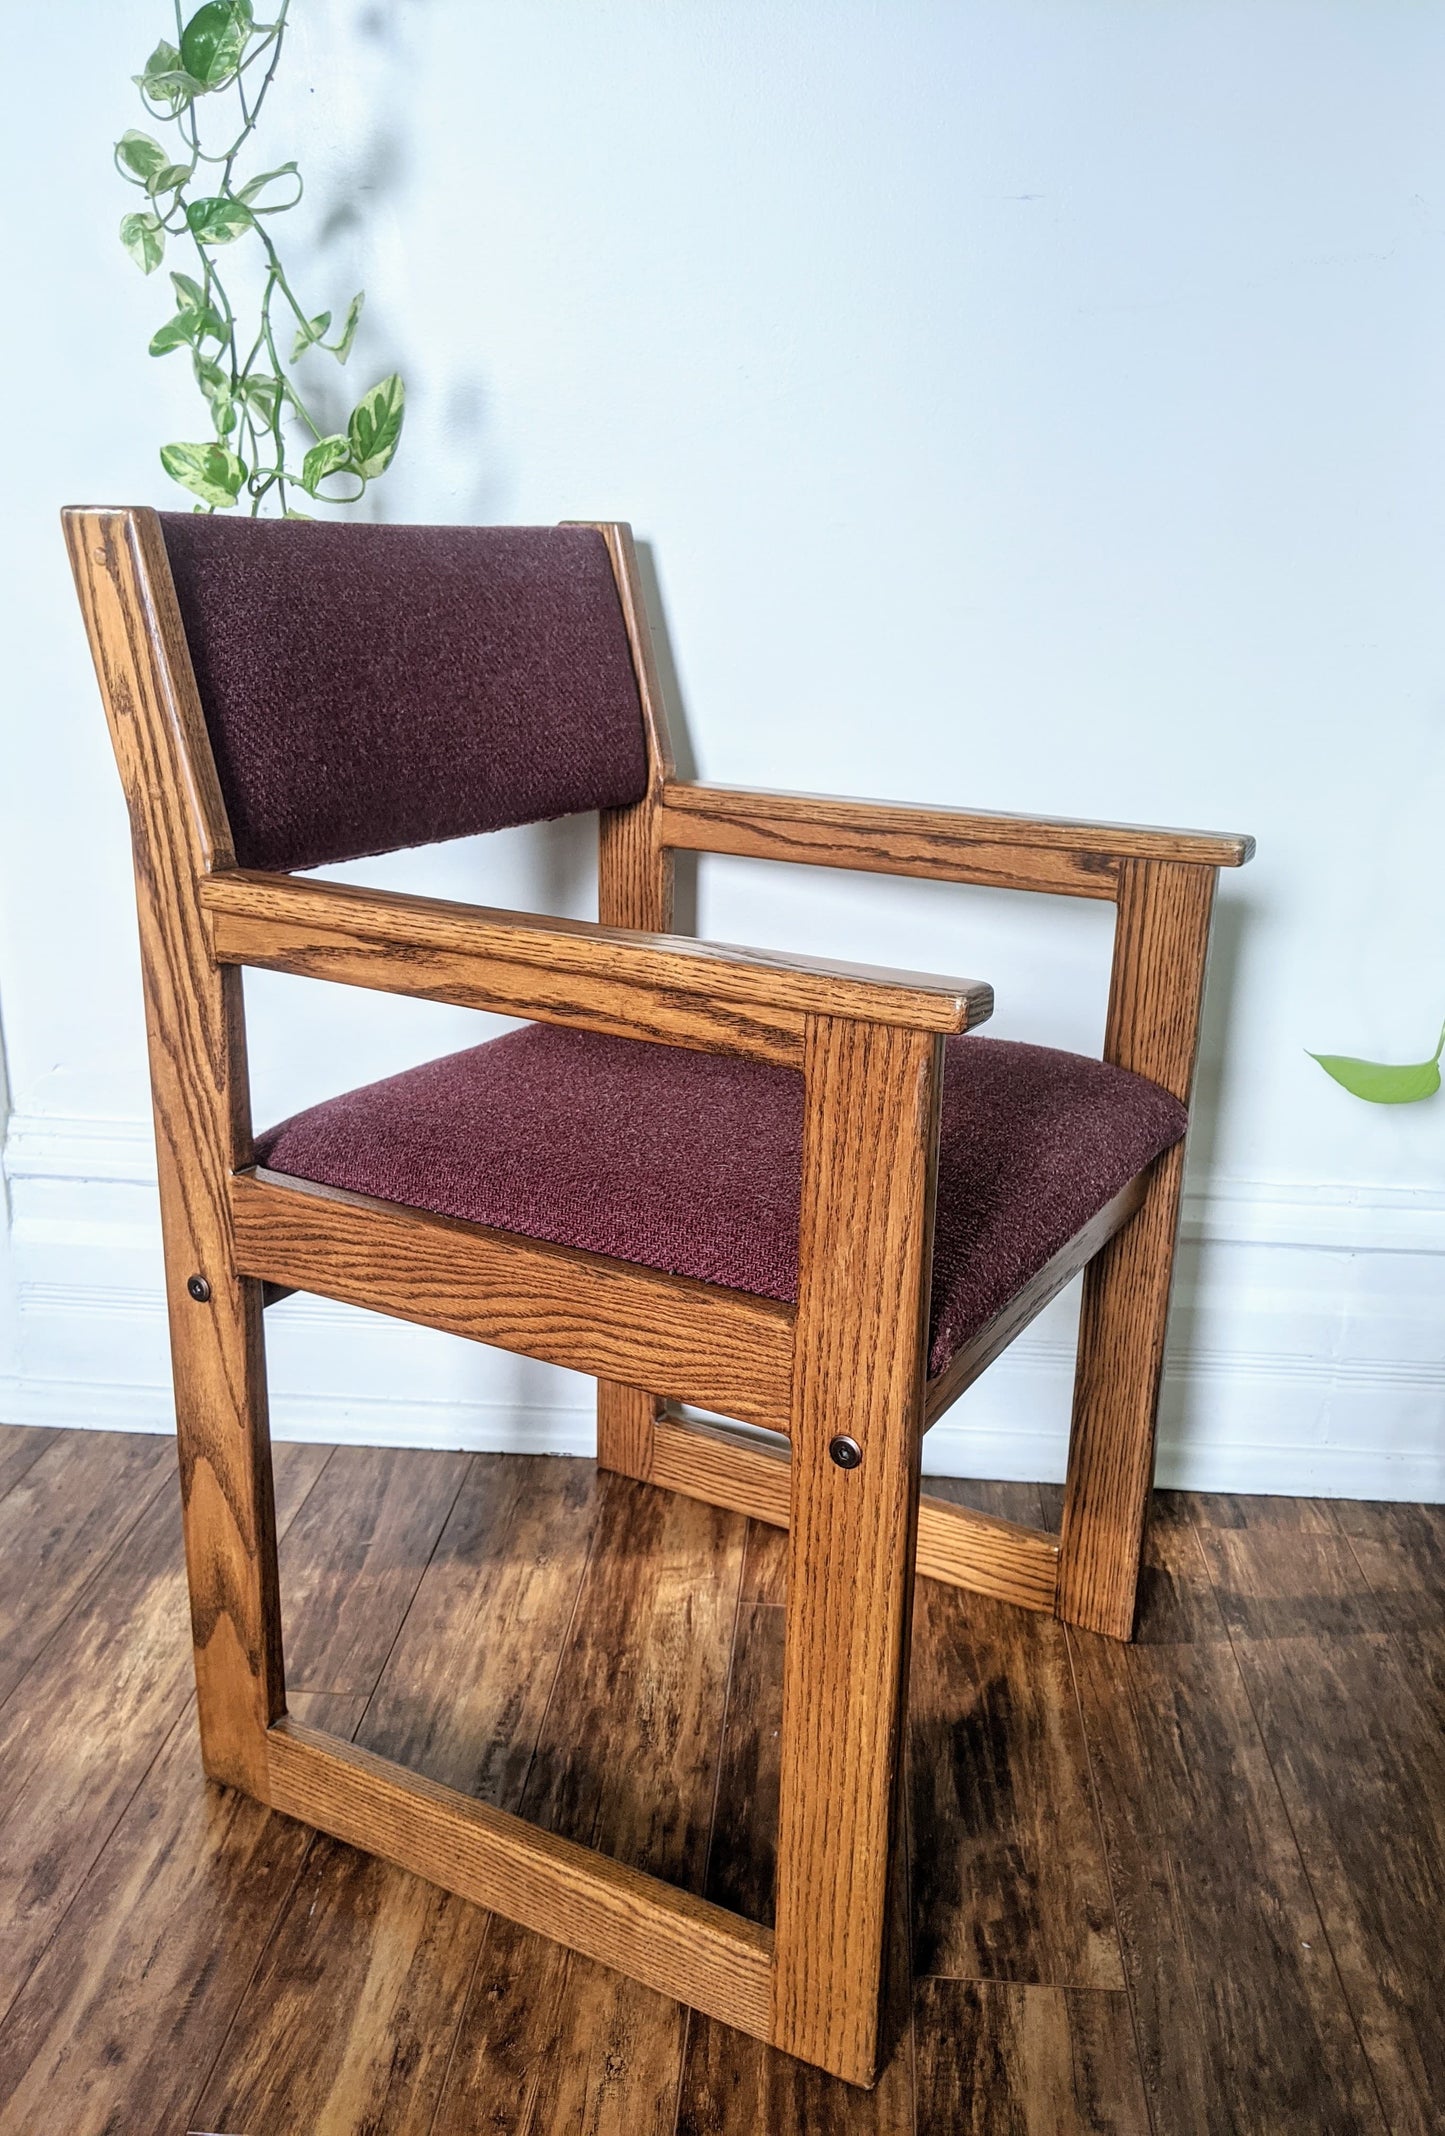 The Sørensen Cubist Chair